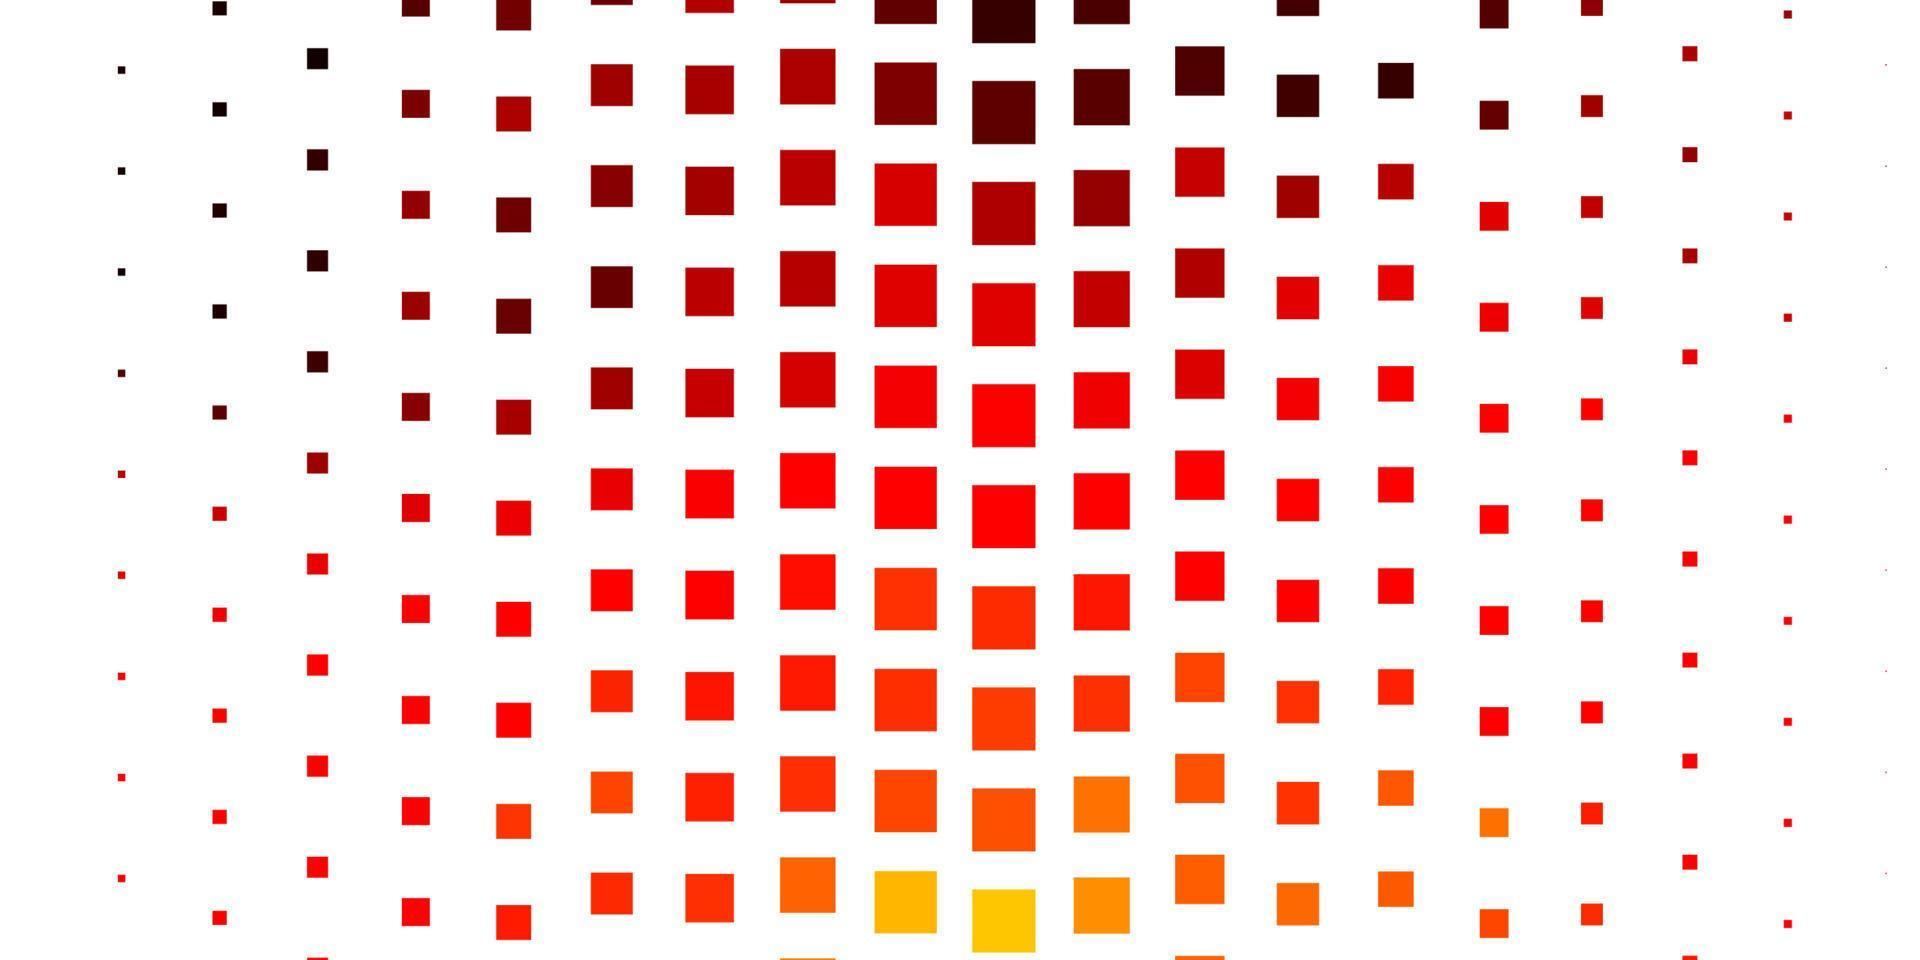 ljusröd, gul vektorbakgrund med rektanglar. vektor